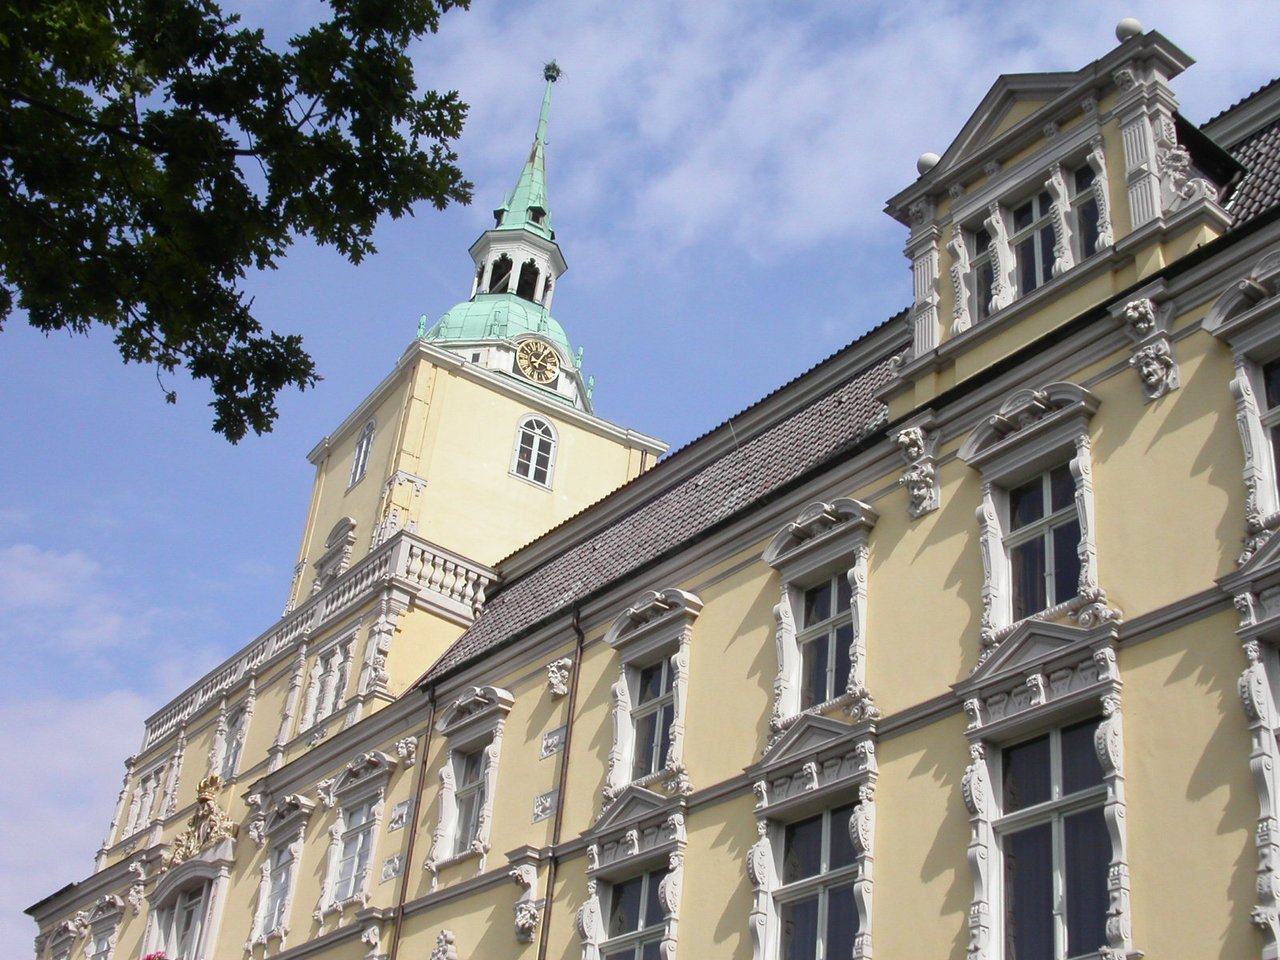 Außenansicht des Oldenburger Schlosses mit Blick auf die Turmspitze.